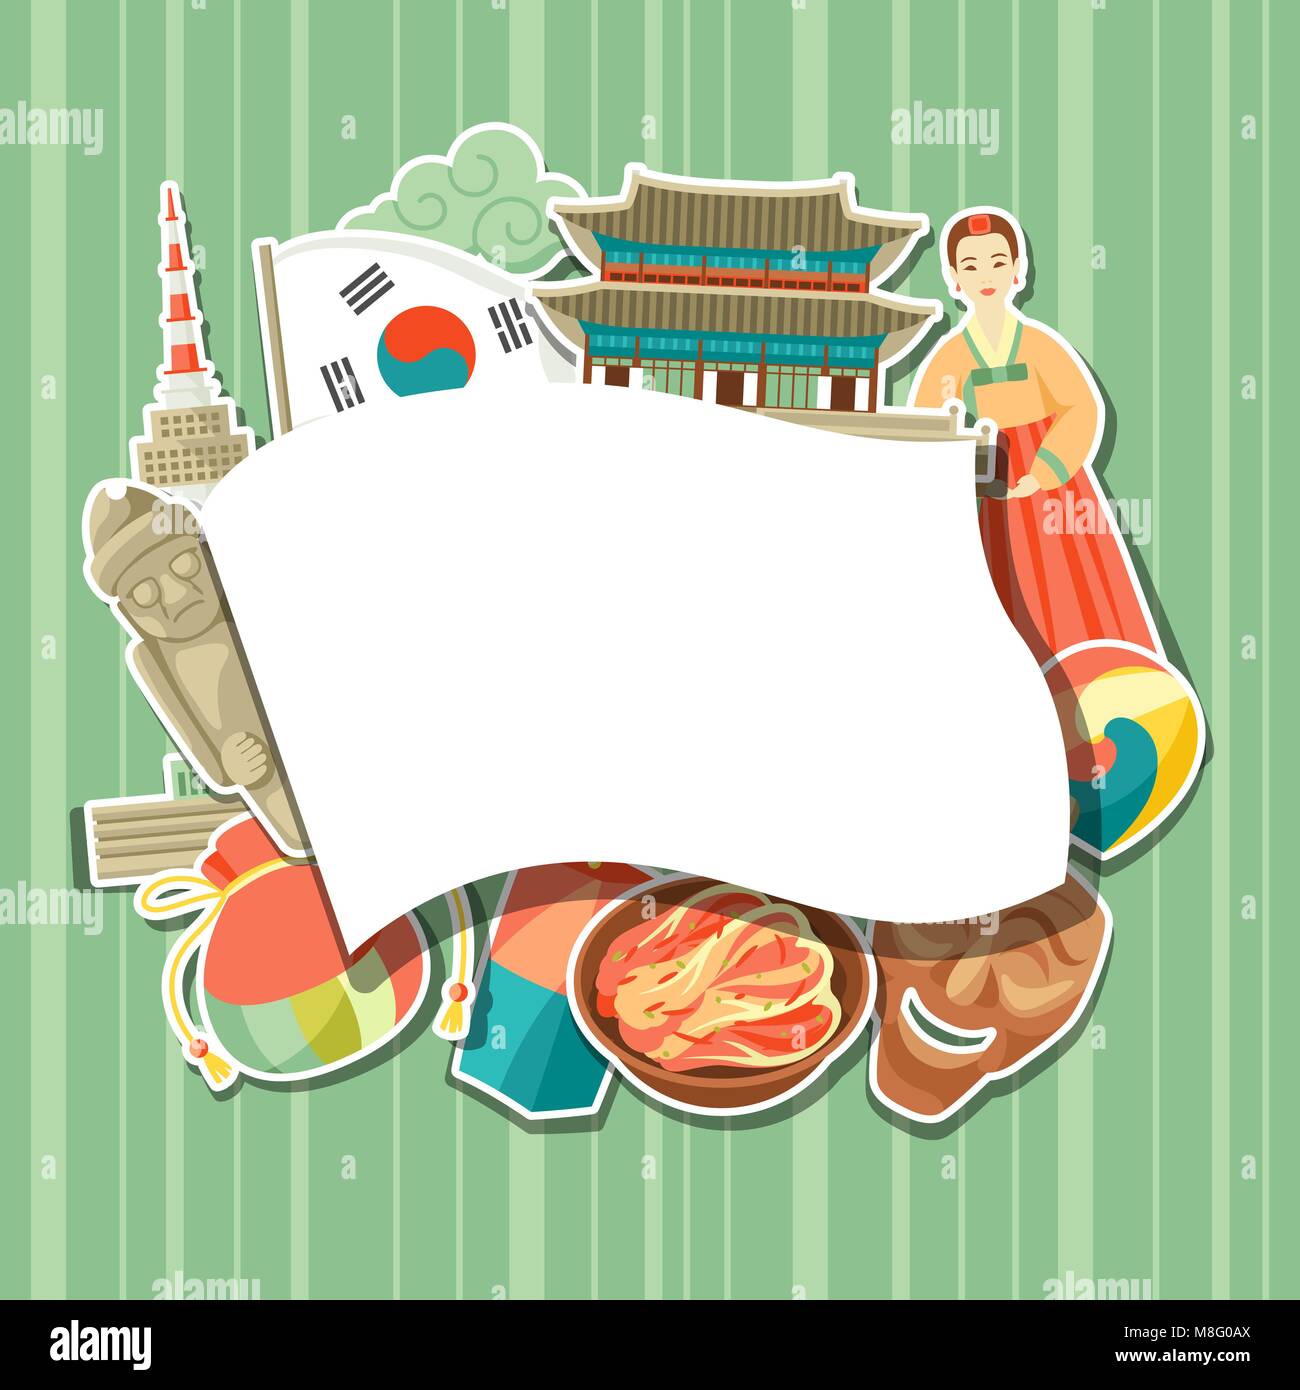 Các biểu tượng dán Hàn Quốc là hình ảnh gắn liền với đất nước và văn hóa Hàn Quốc. Bức ảnh về những hình ảnh dán Hàn Quốc sẽ khiến bạn muốn sưu tập và sử dụng những hình ảnh này để thể hiện cảm nhận của mình về đất nước này. 